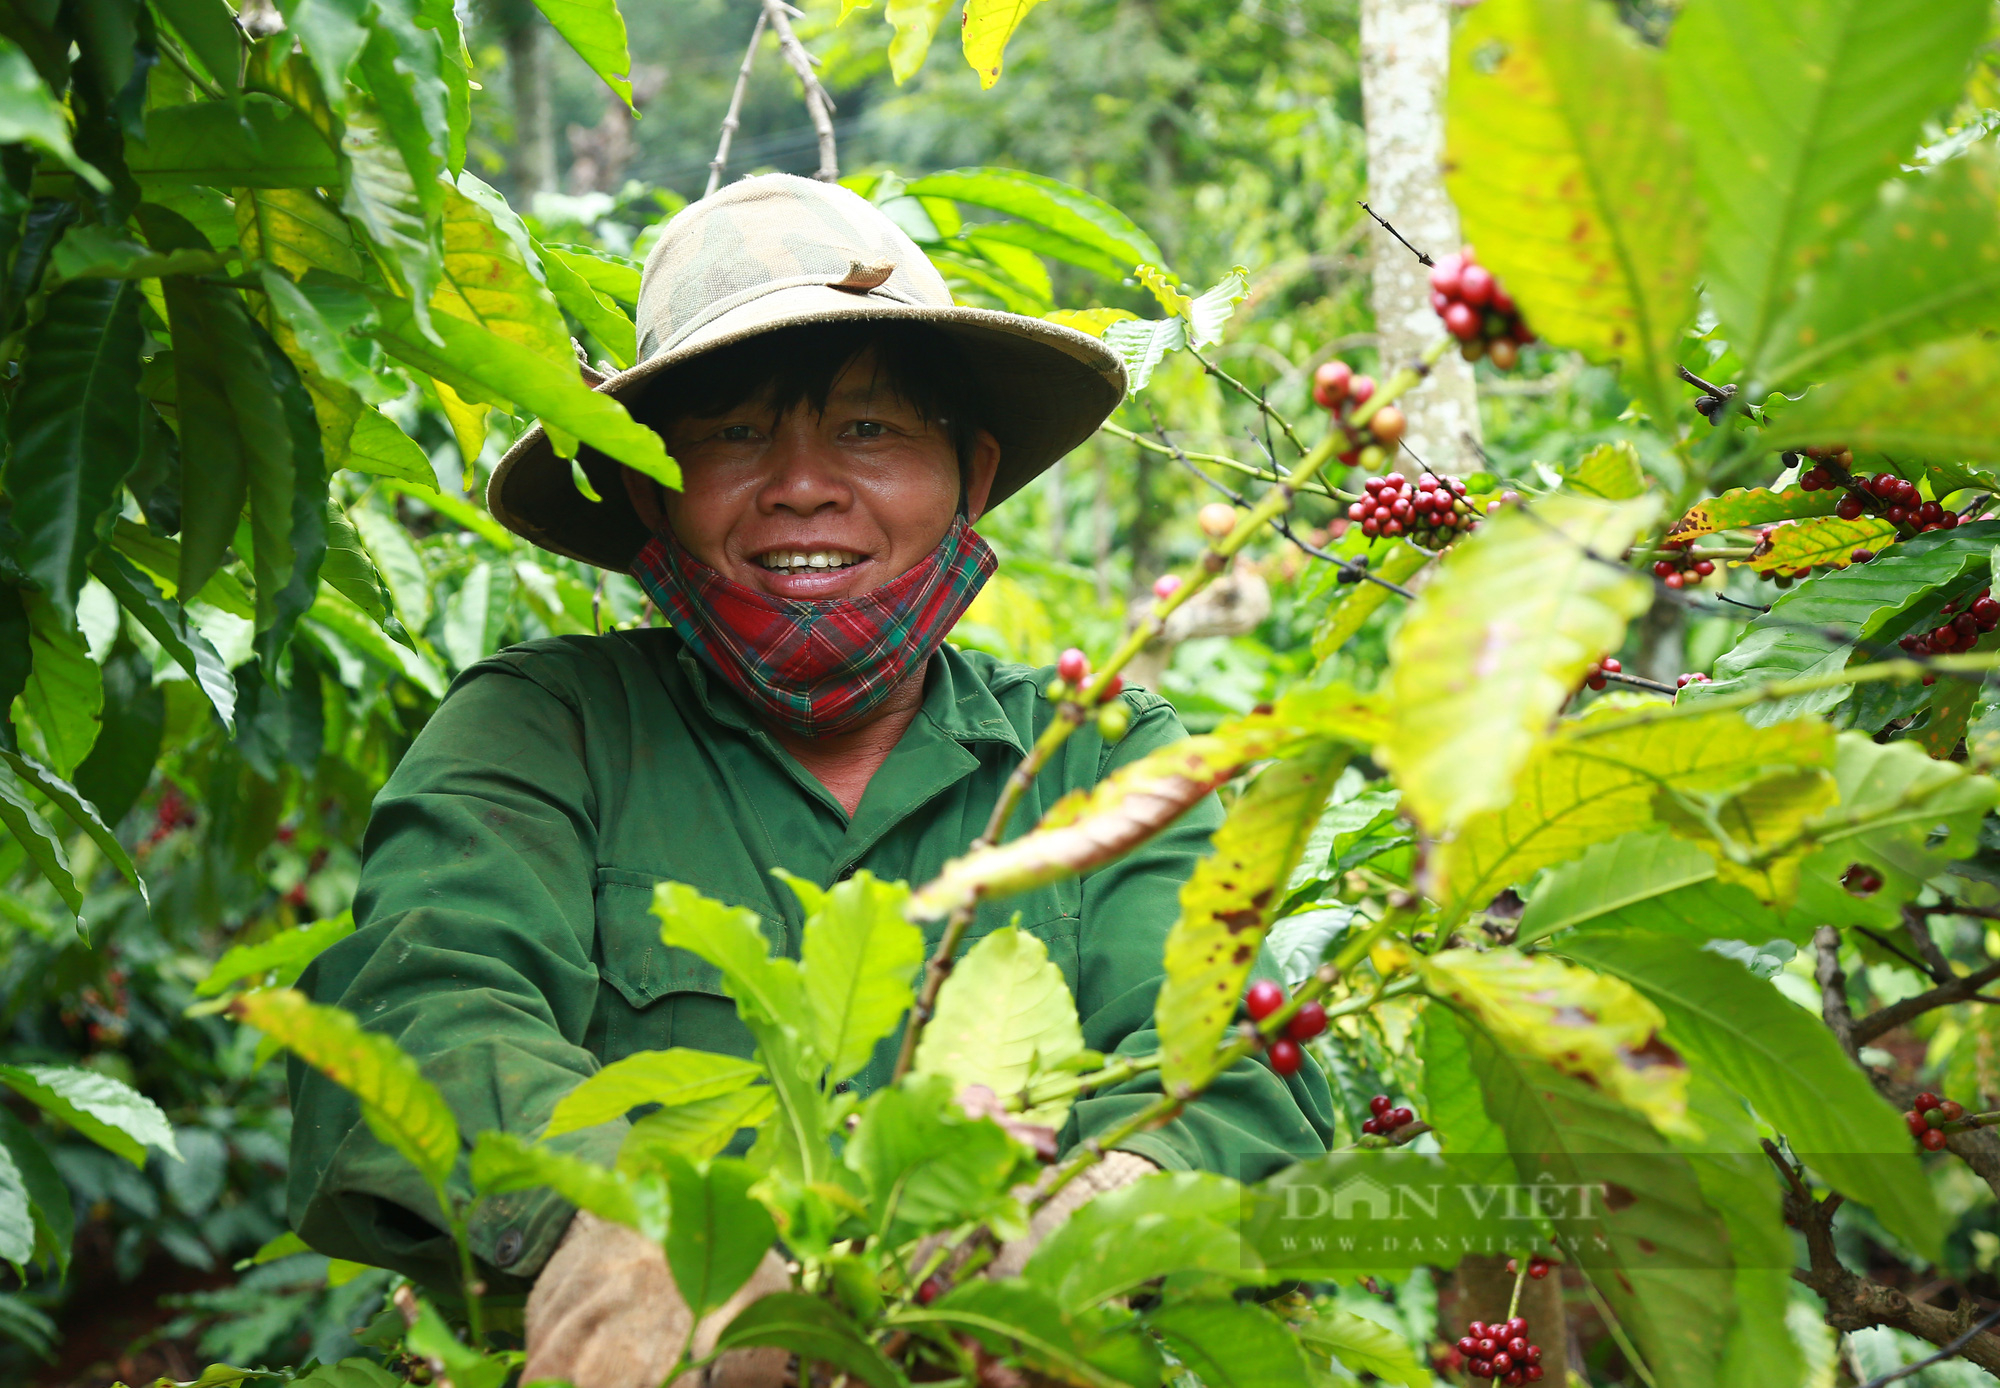 Mùa cà phê chín đỏ tại Đắk Lắk - Ảnh 6.